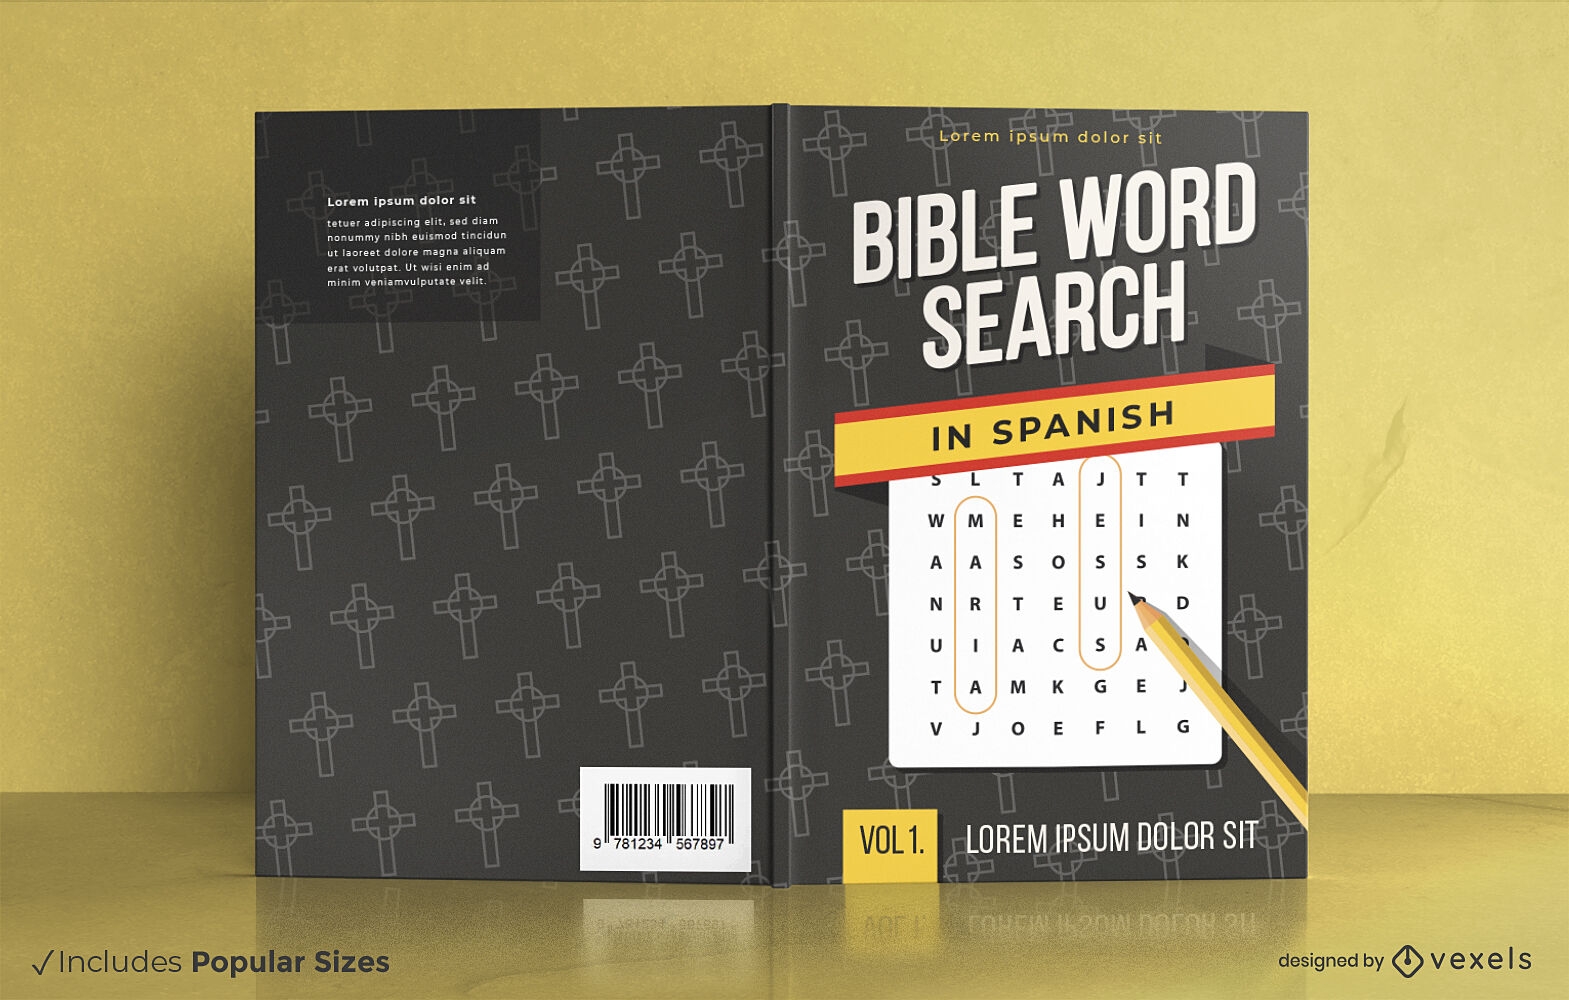 Design da capa do livro para pesquisa de palavras na B?blia em espanhol